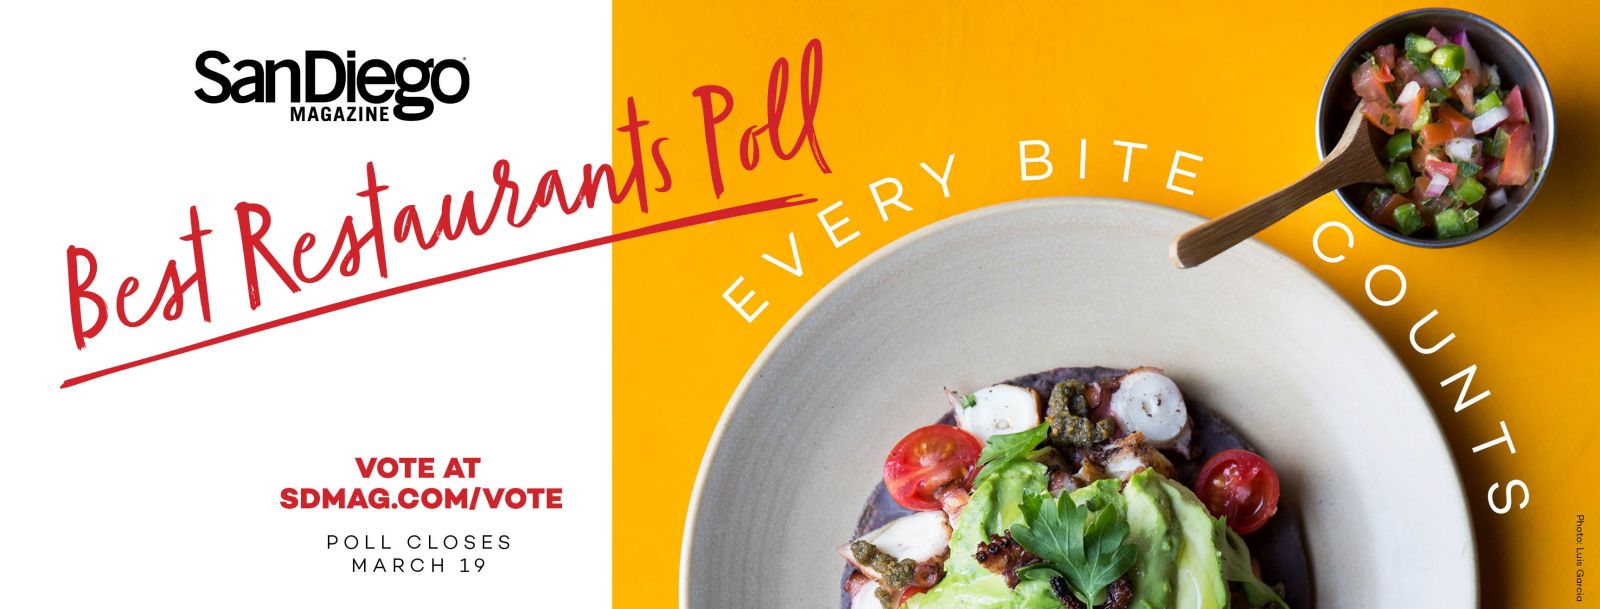 Best Restaurants Voting Toolkit 2018